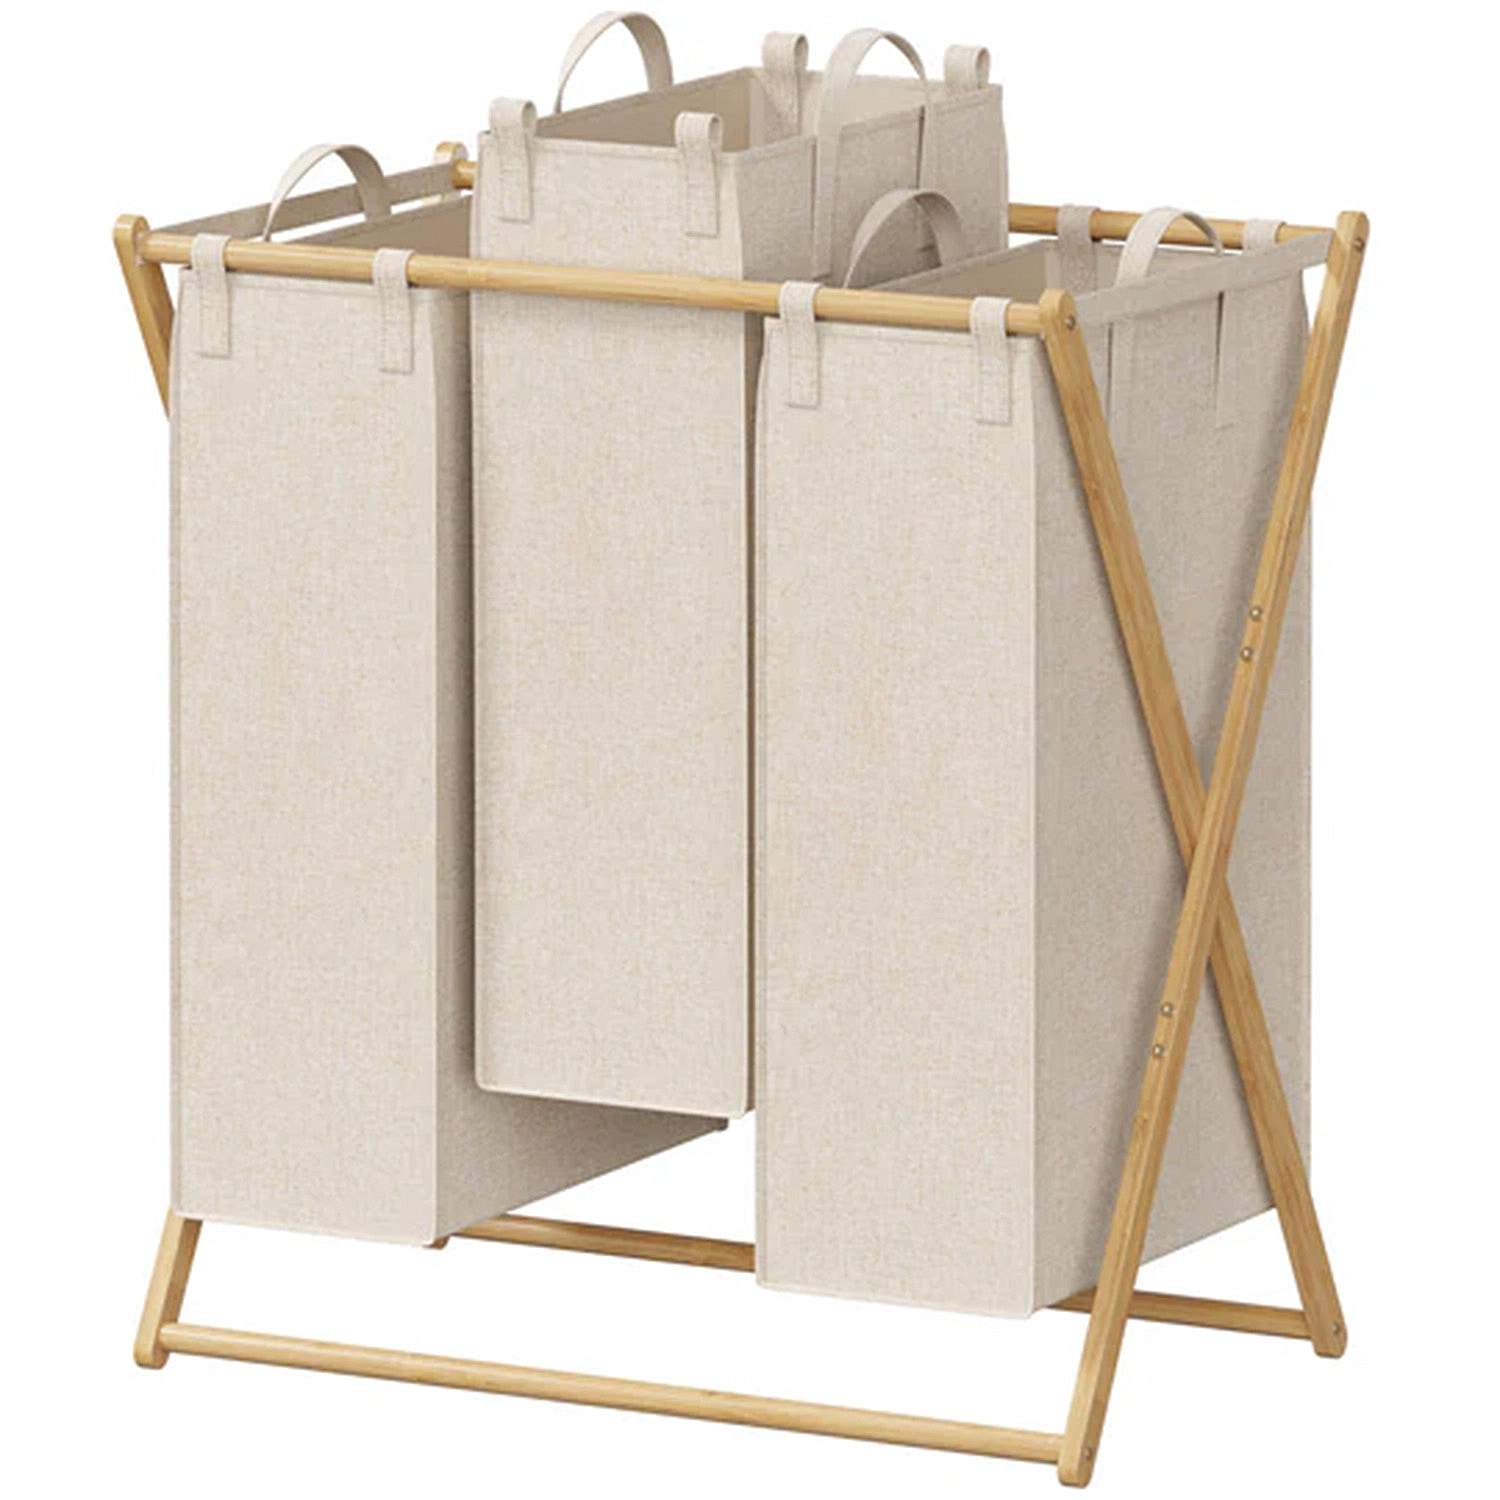 Foldable-Laundry-Basket-3-Section-Large-Bamboo-X-Frame-Laundry-Basket-